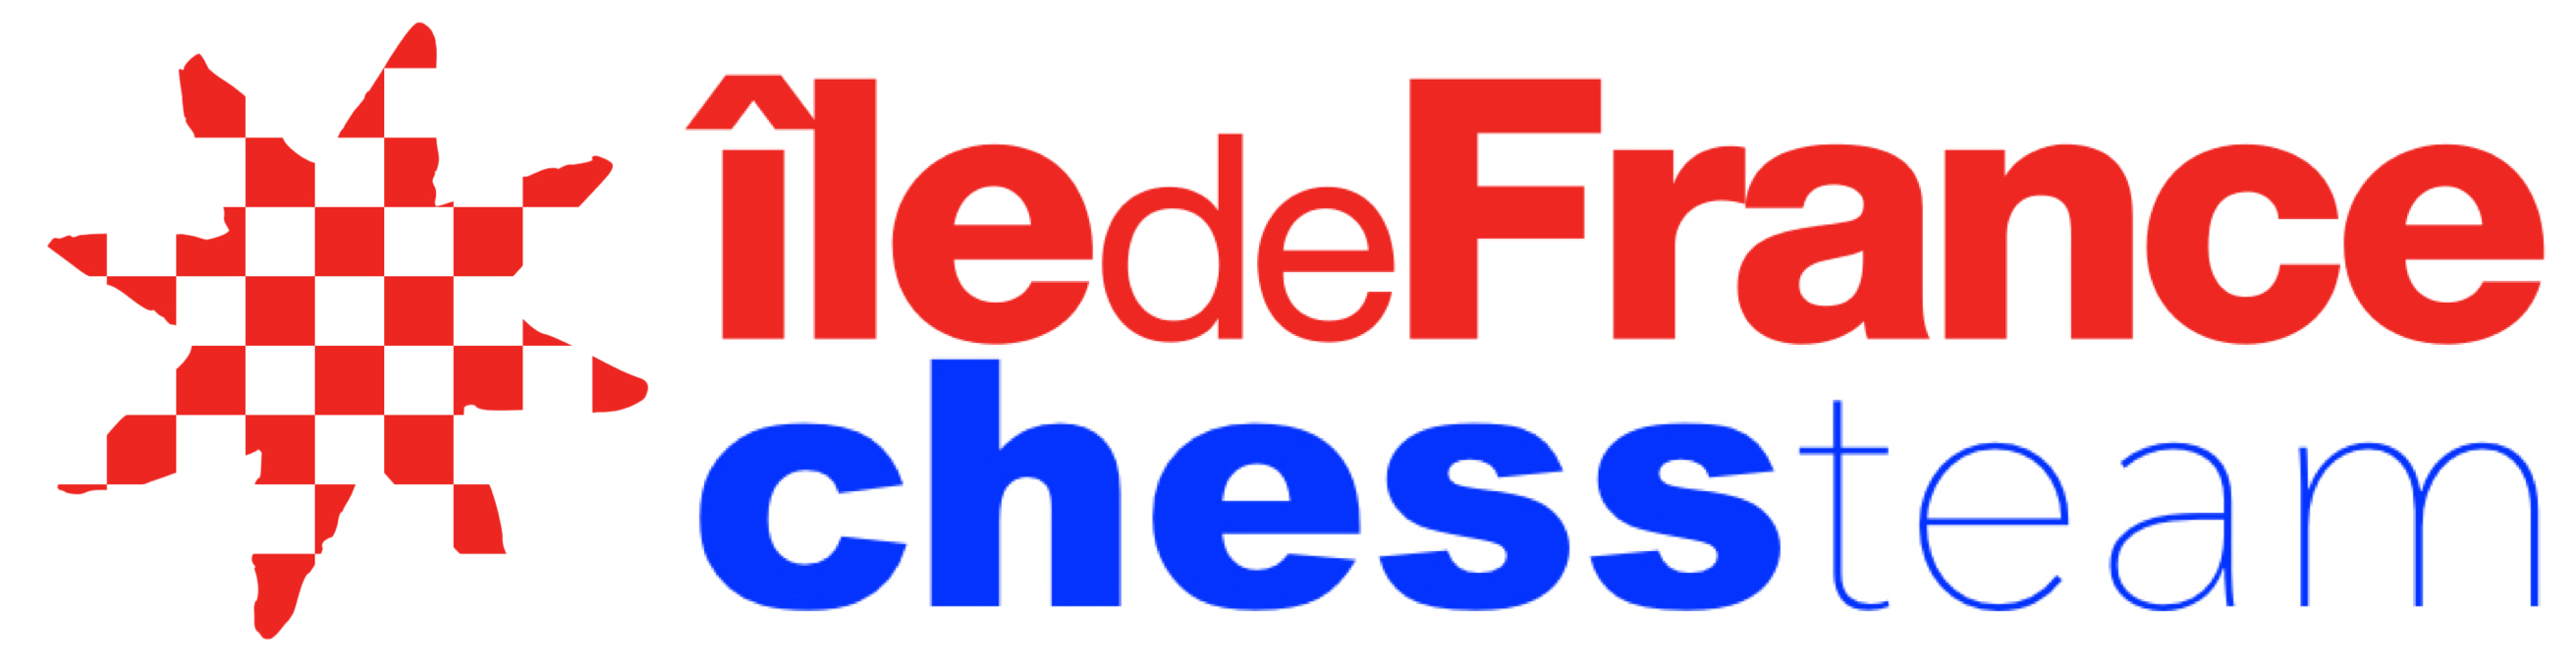 Logo IdFChessTeam